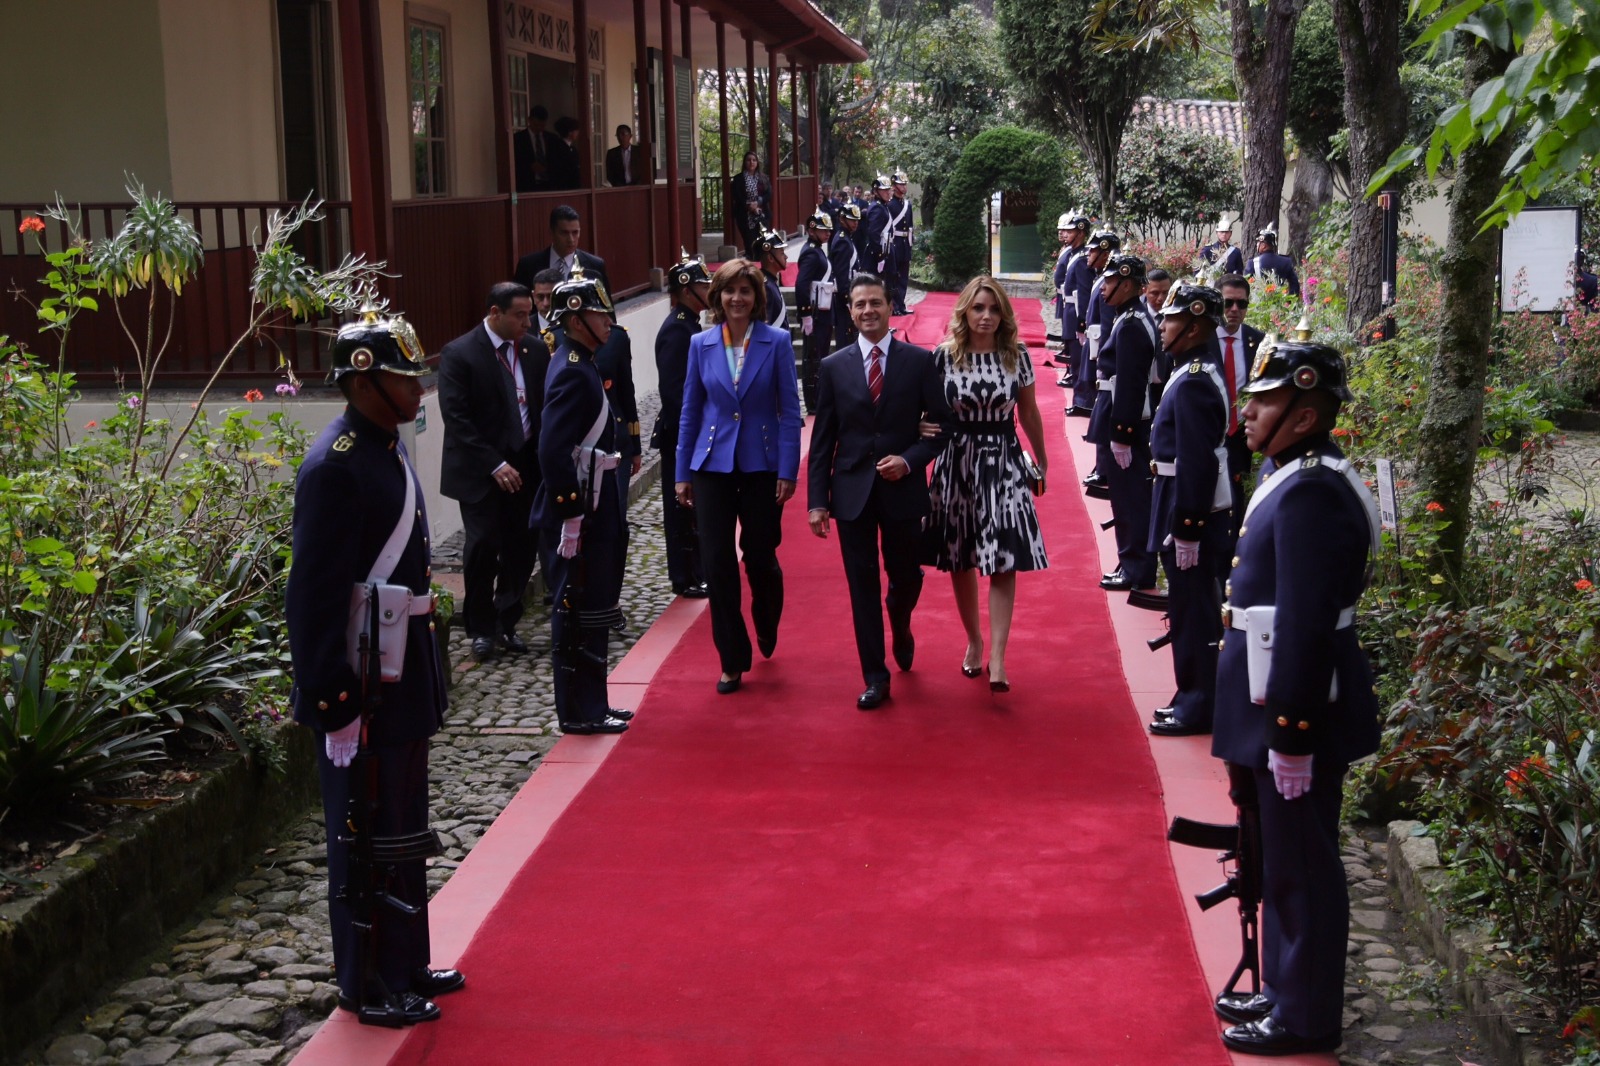 El Jefe de Estado de México, Enrique Peña Nieto, depositó una ofrenda floral en la Quinta de Bolívar, en compañía de su esposa, Angélica Rivera Hurtado, y la Ministra de Relaciones Exteriores María Ángela Holguín